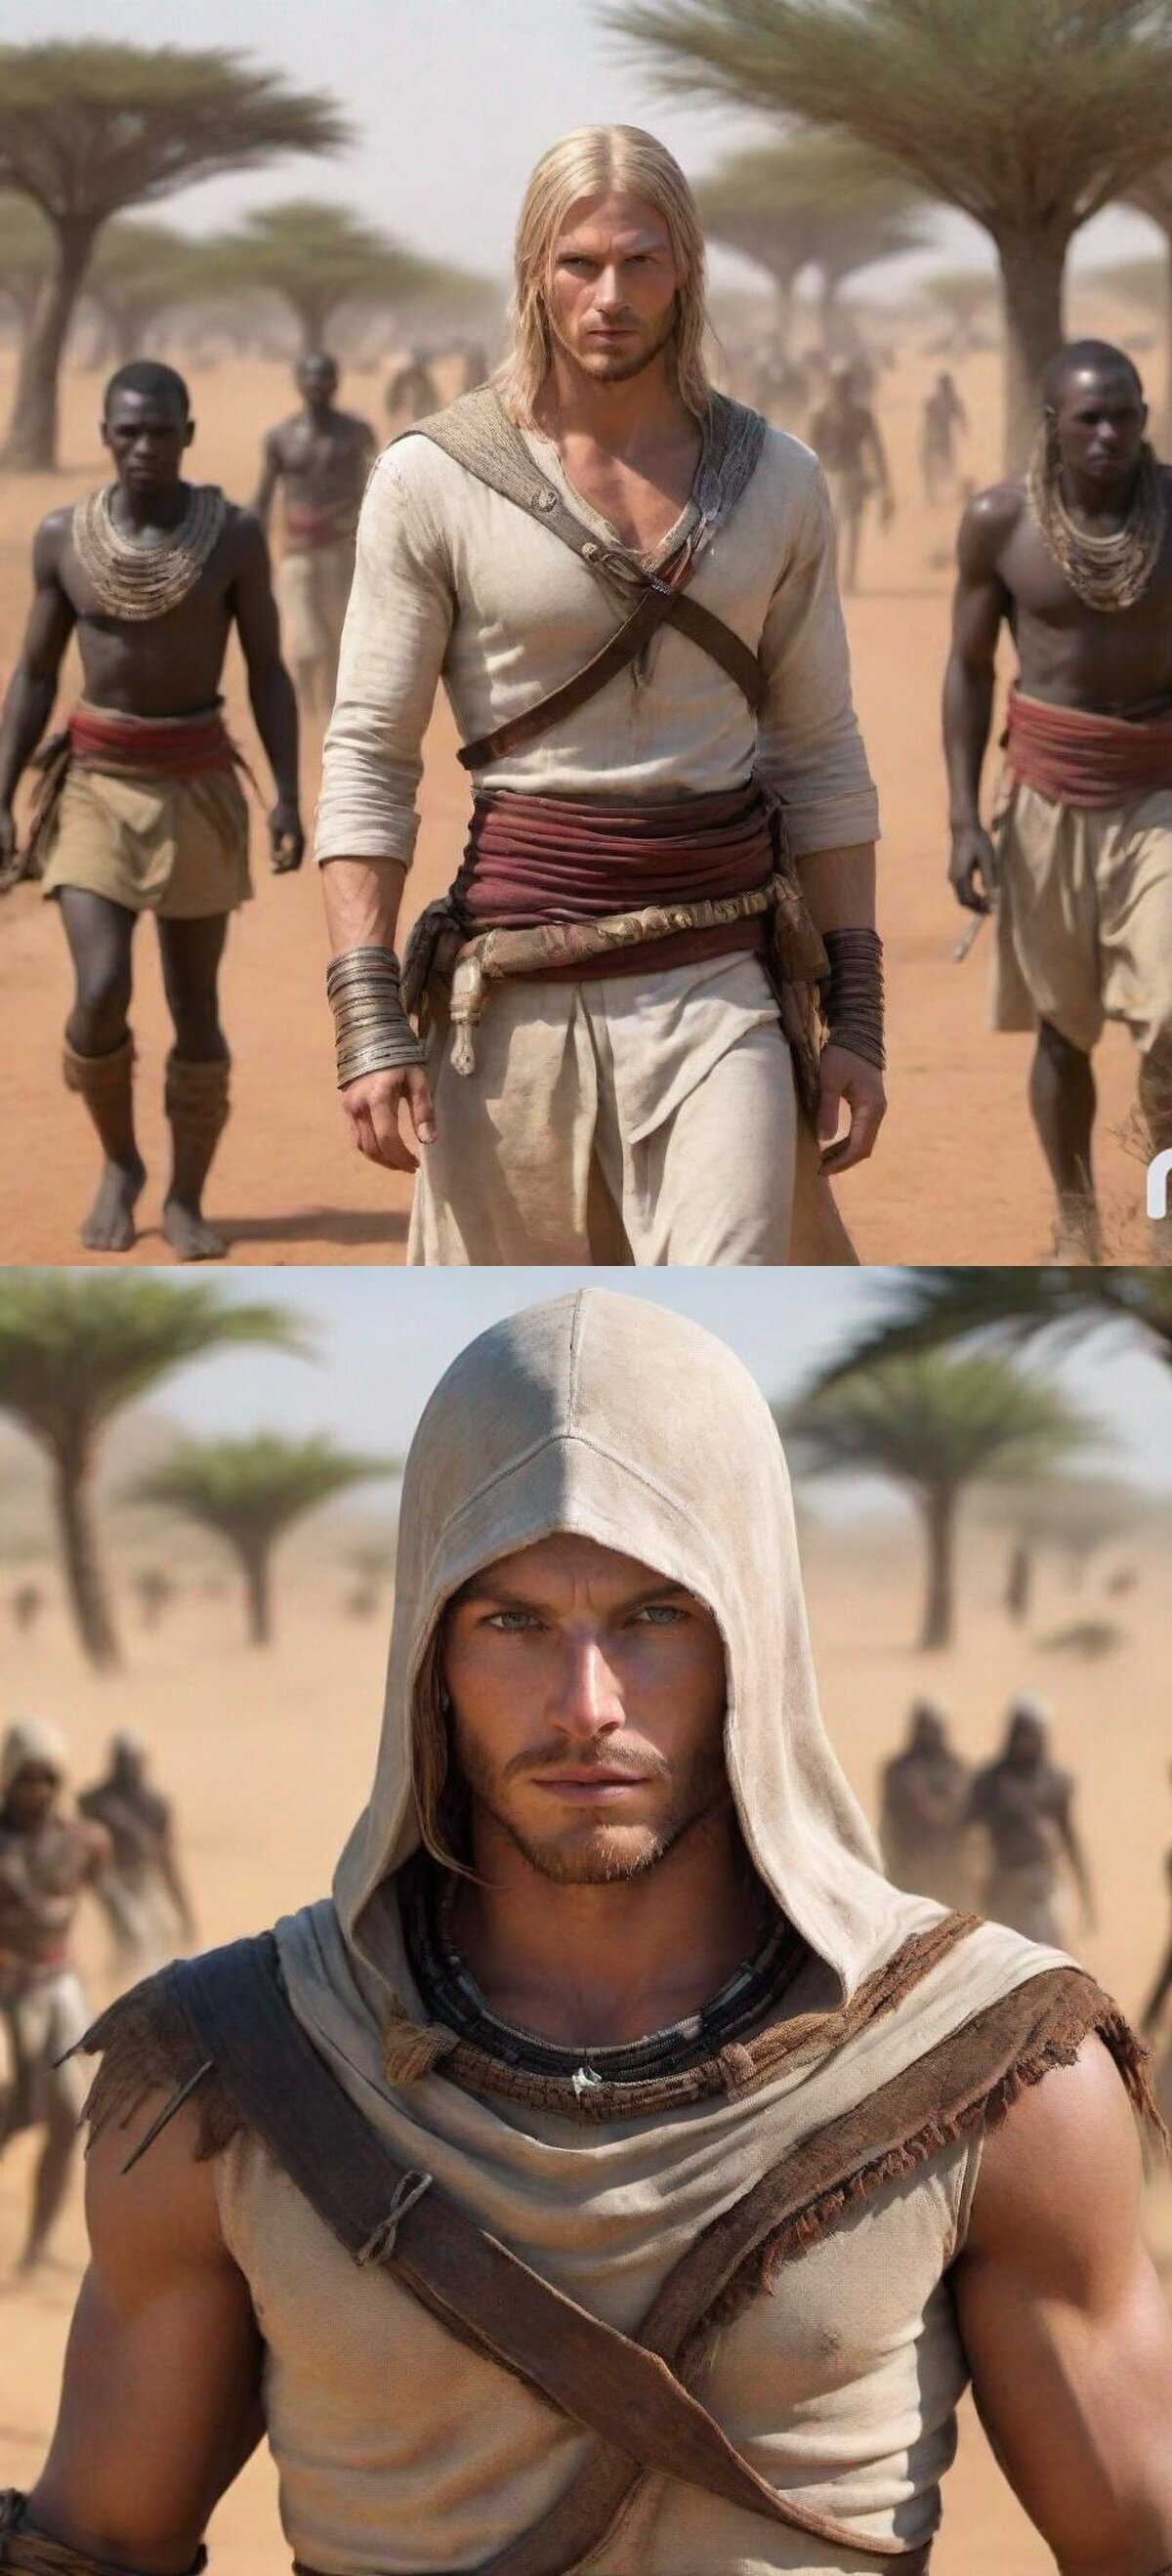 El día que Ubi anuncie un Assassin's Creed ambientado en África, por @Mangalawyer